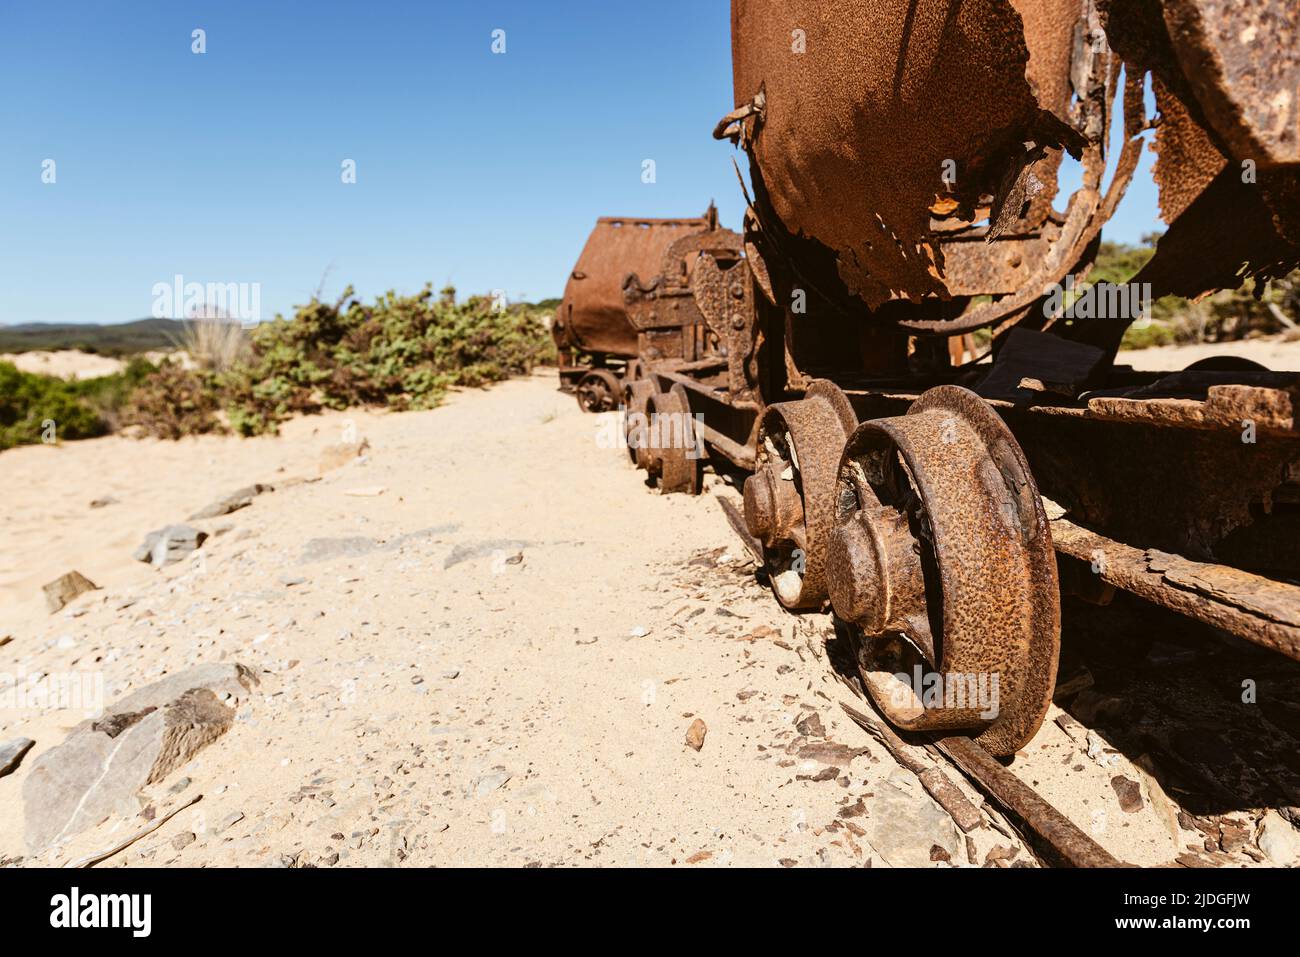 Vagones rotos oxidados y chatarra de un ferrocarril desde las minas de plomo y zinc hasta las dunas de arena cerca de la playa de Piscinas, Costa Verde, Cerdeña, Italia Foto de stock